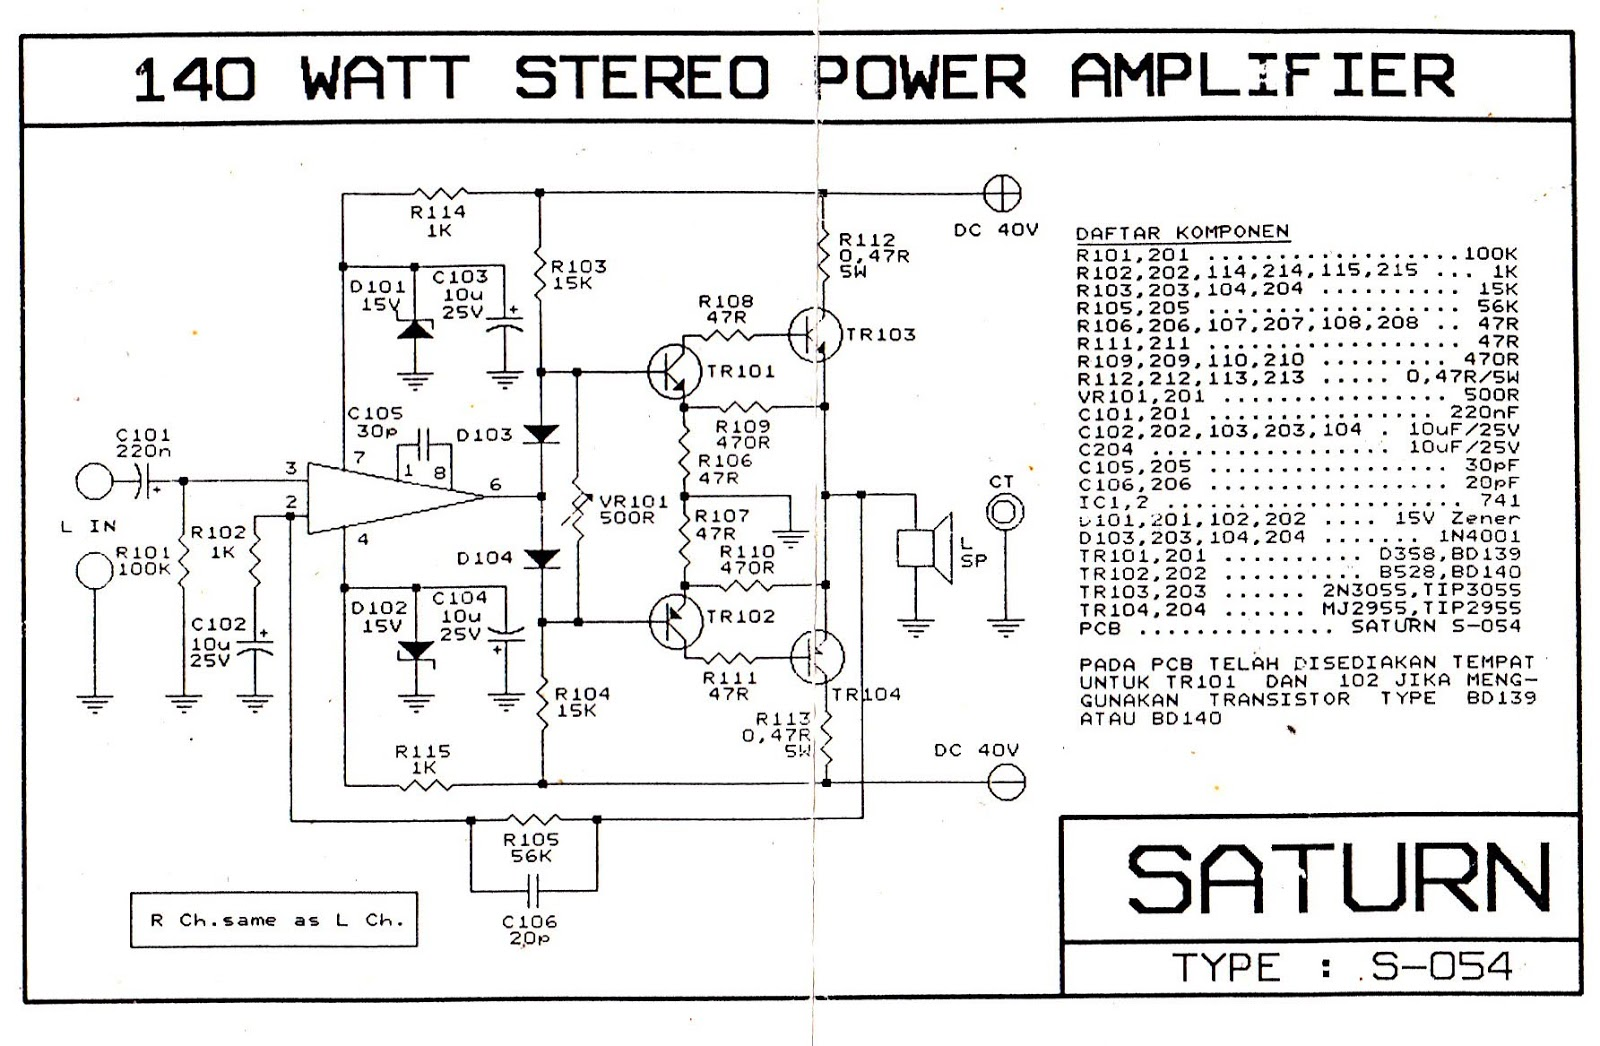 skema power ampli 170watt